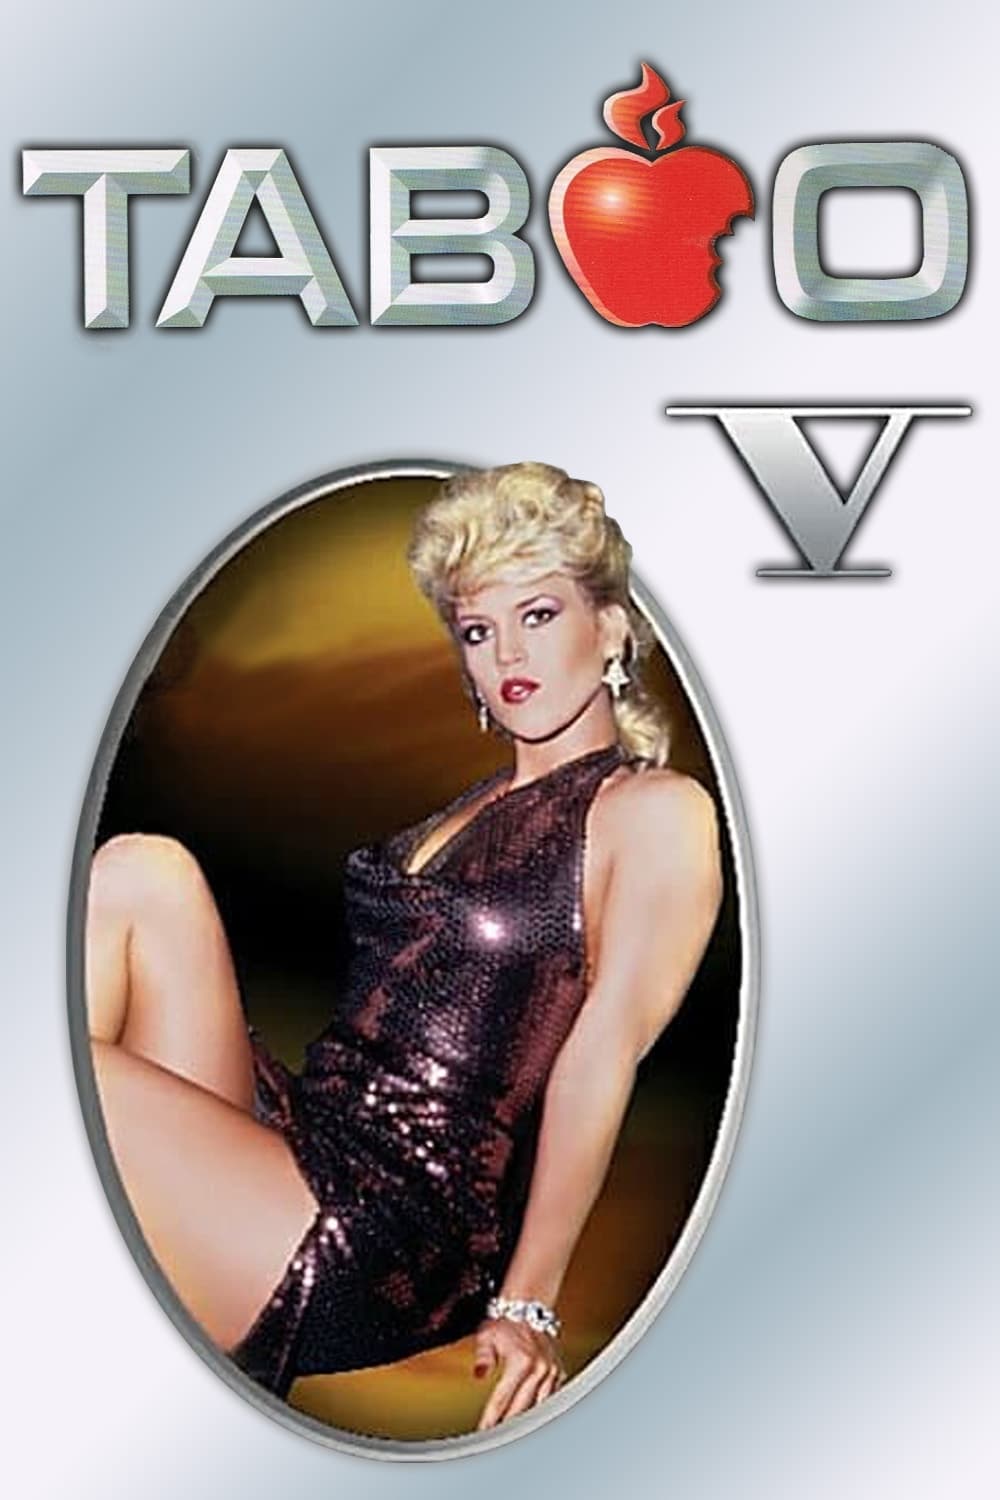 Taboo v: the secret